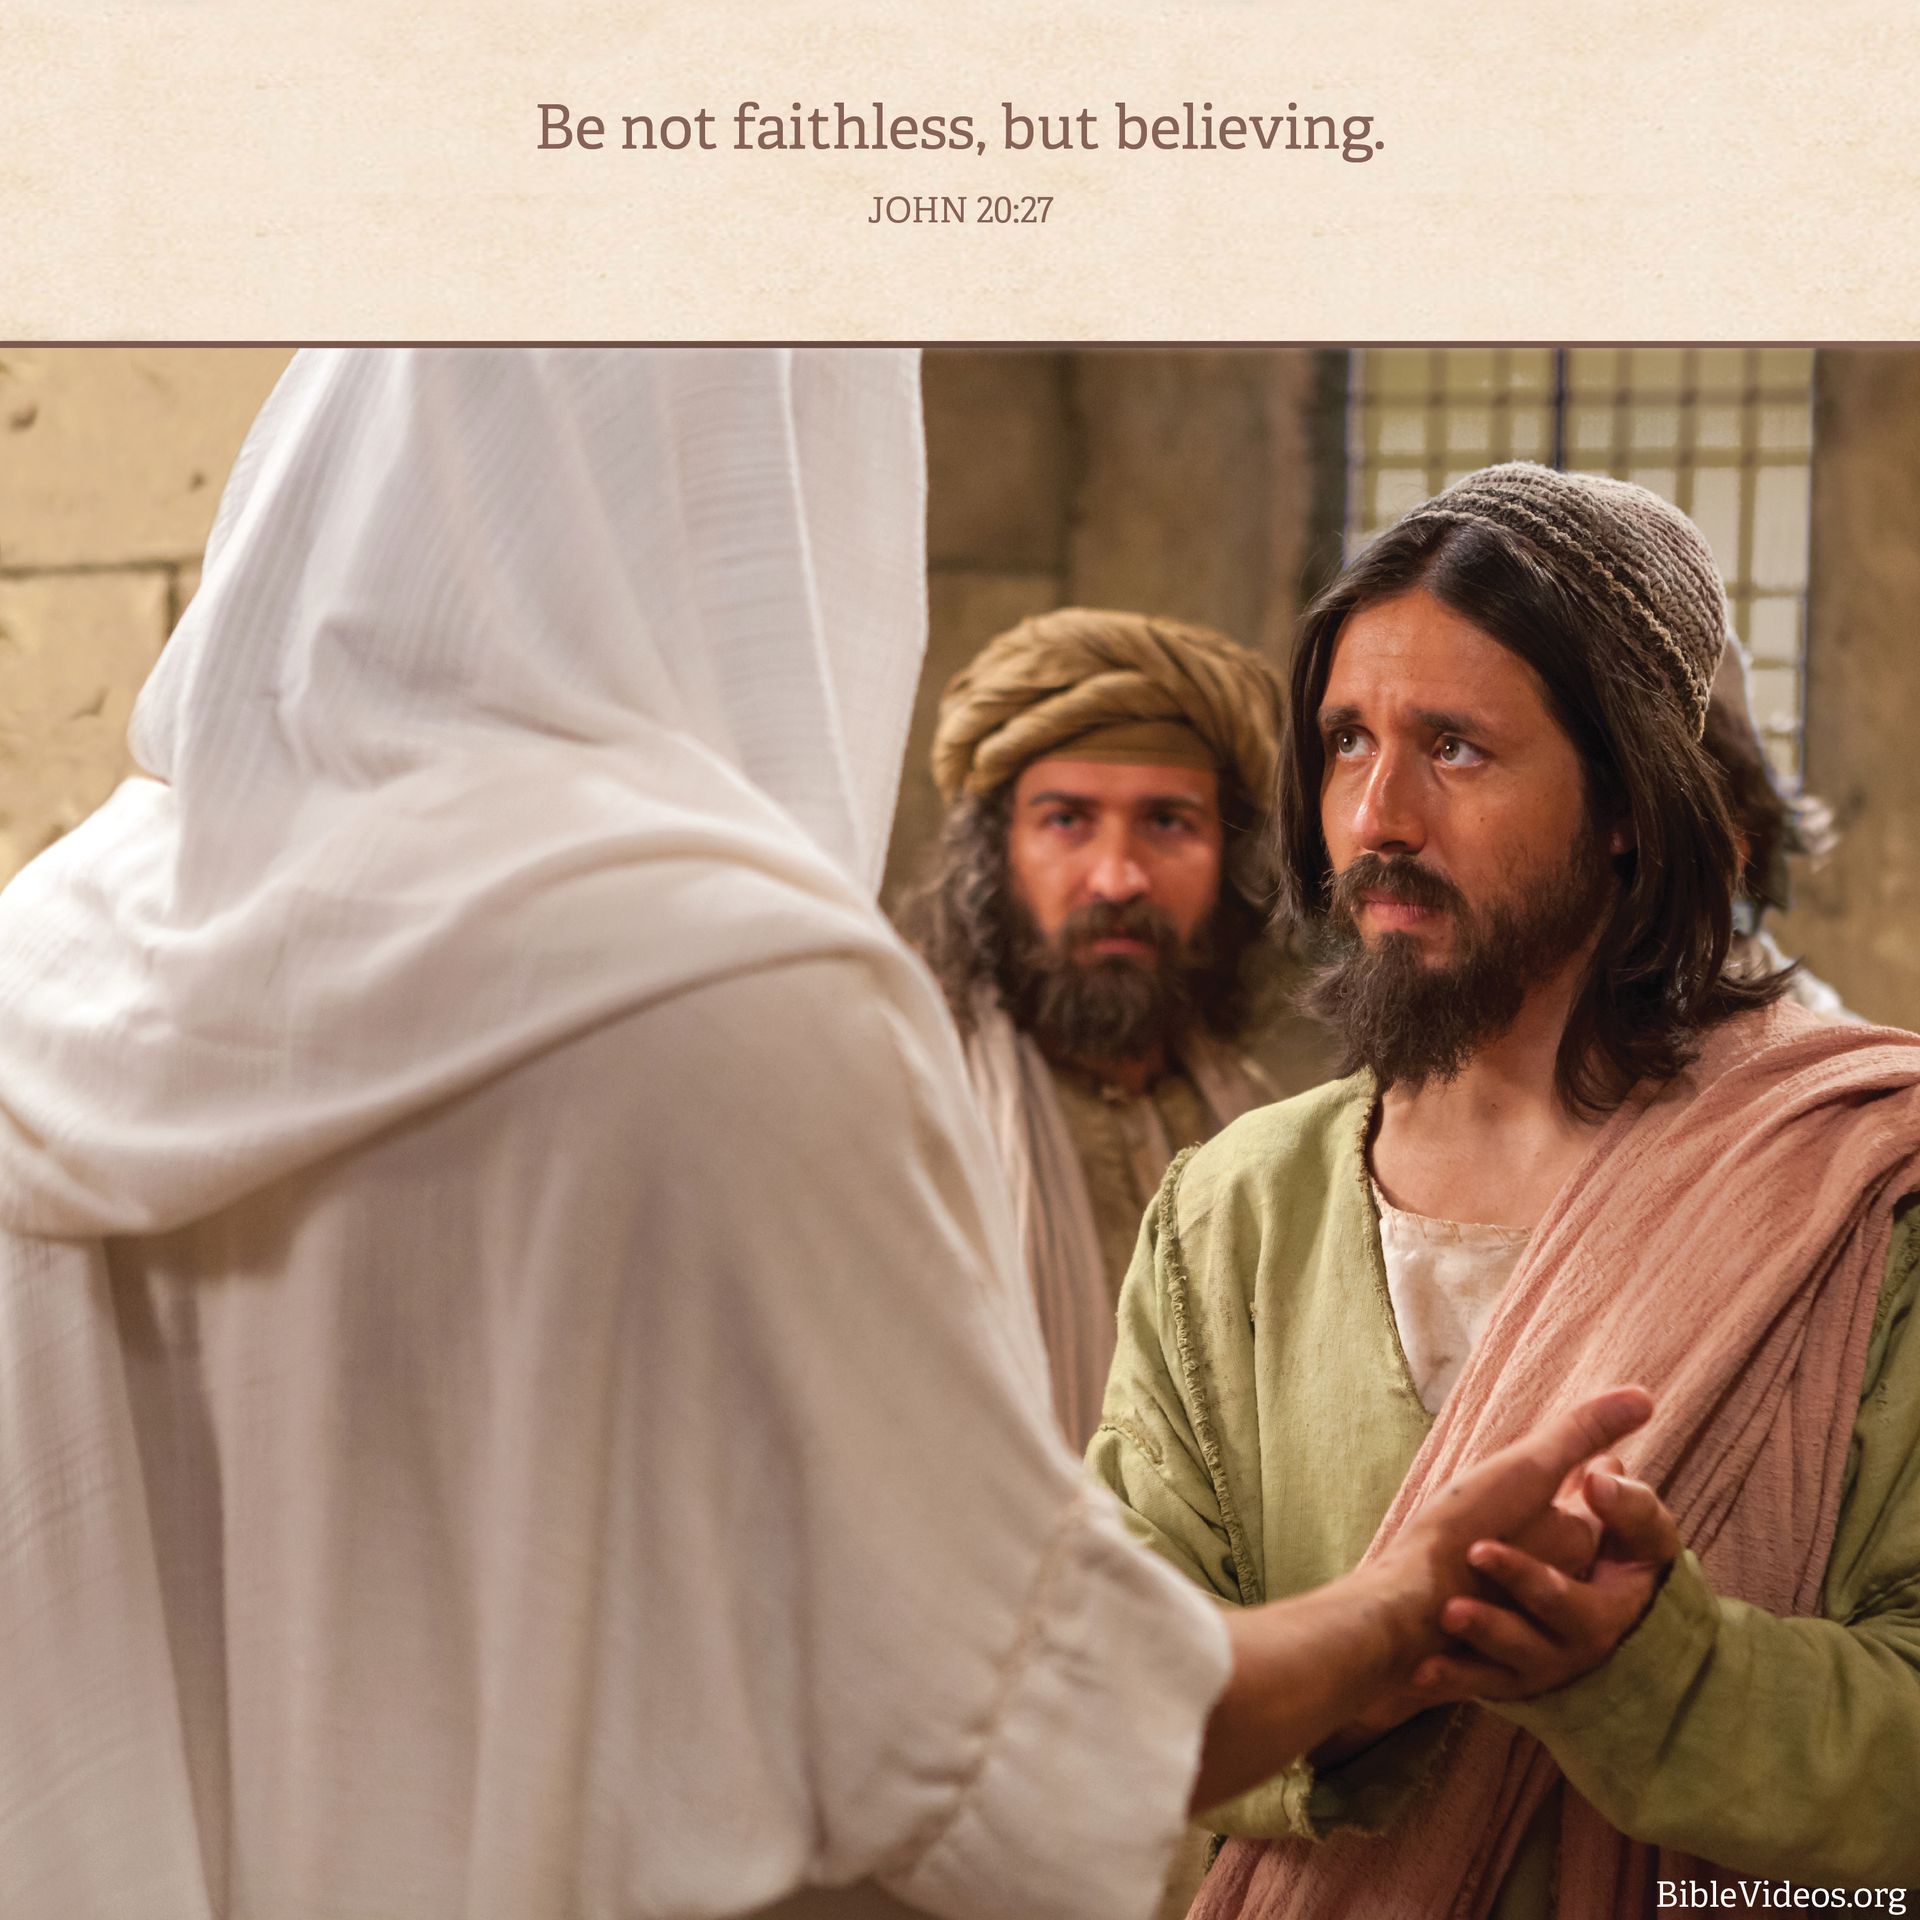 “Be not faithless, but believing.”—John 20:27